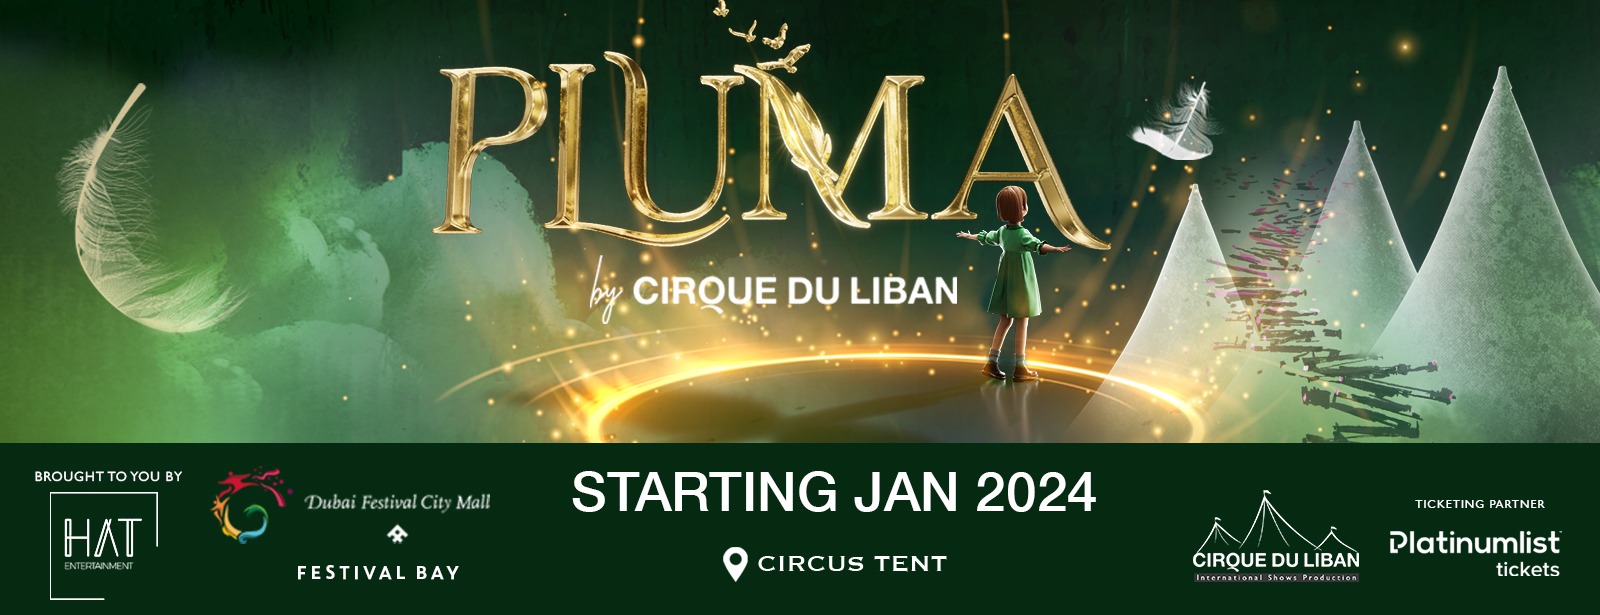 Pluma Show/Circus in Dubai - Coming Soon in UAE